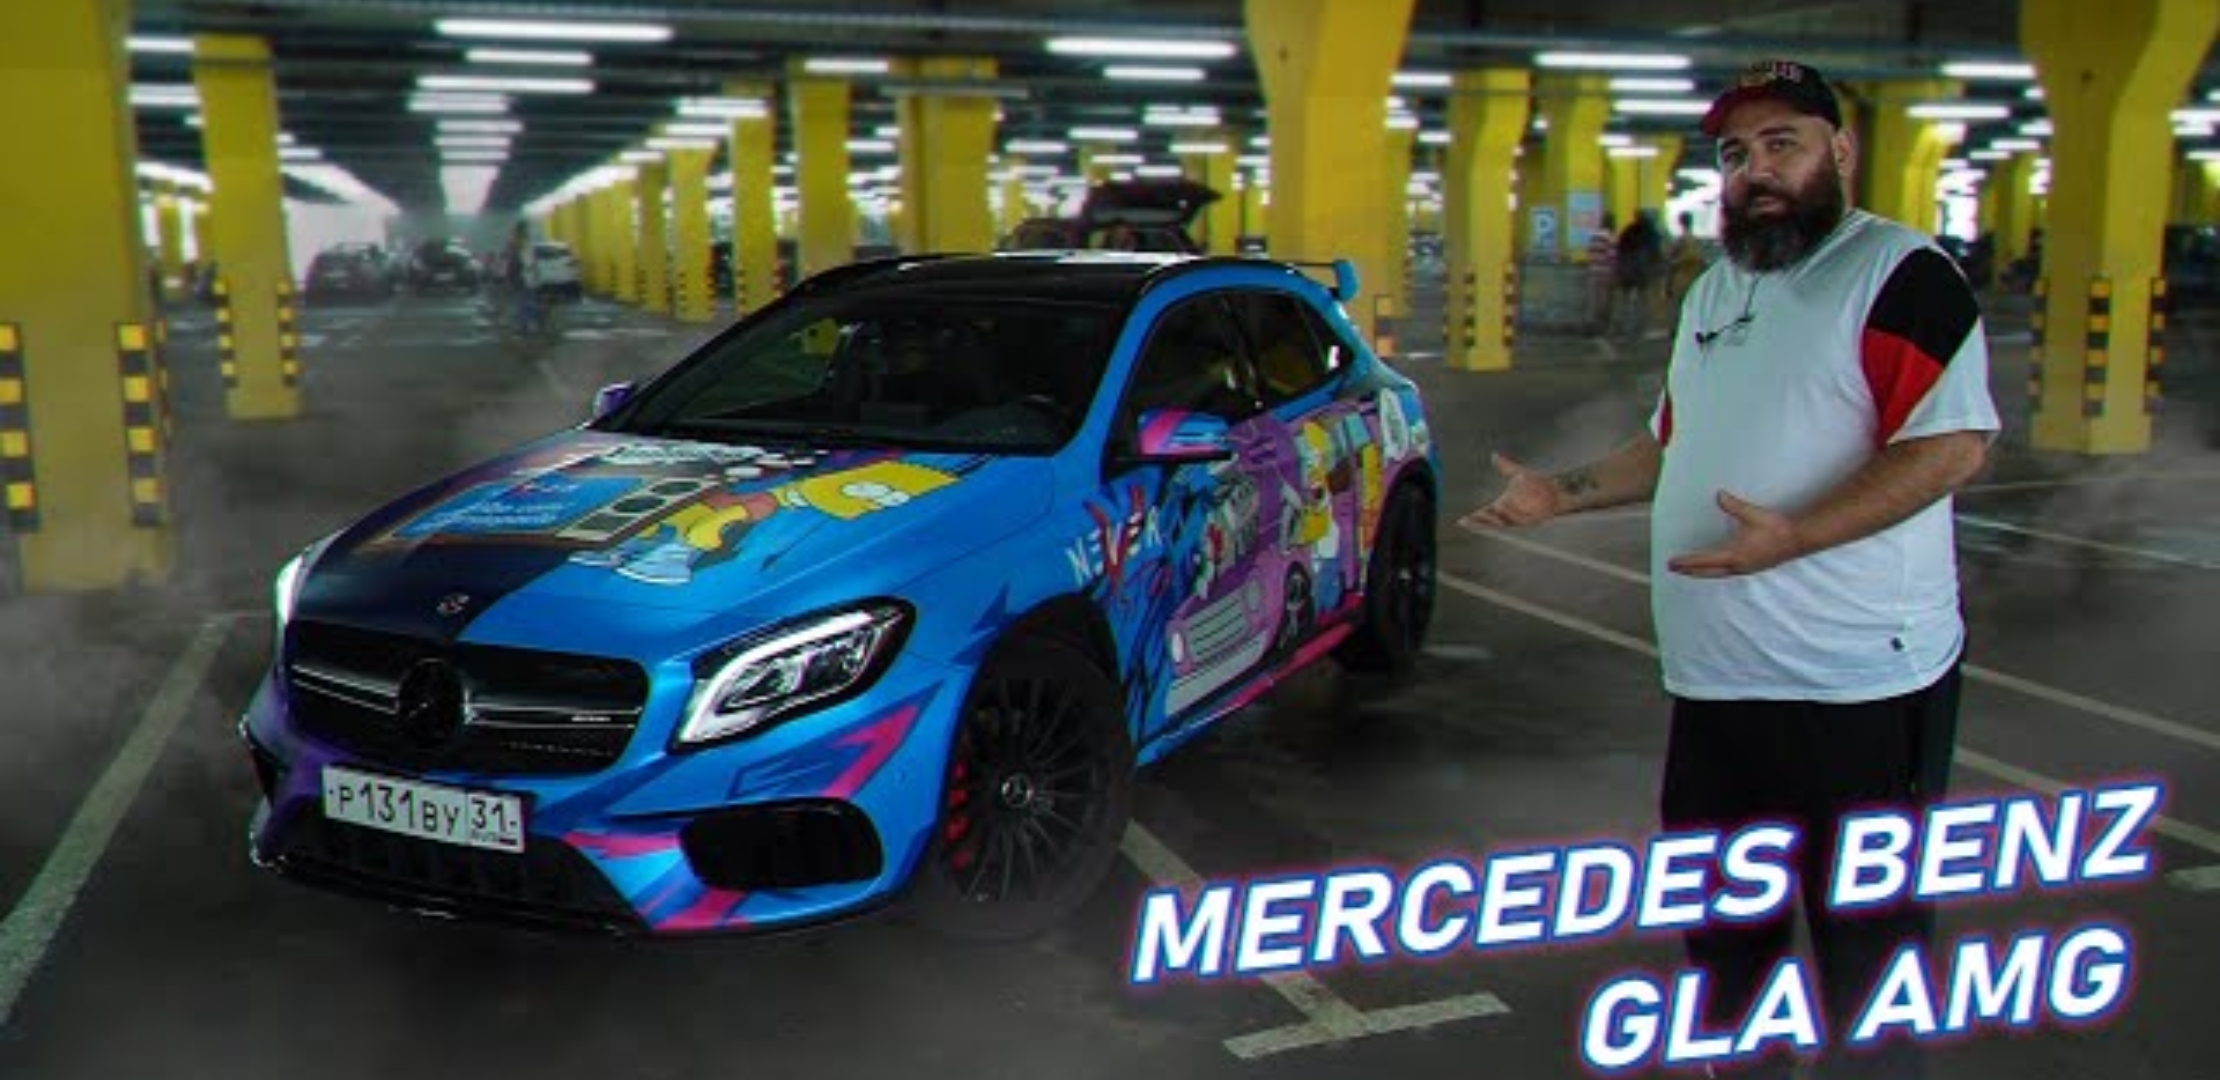 Анонс видео-теста Mercedes GLA 45 AMG - Симпсон на стейдже!